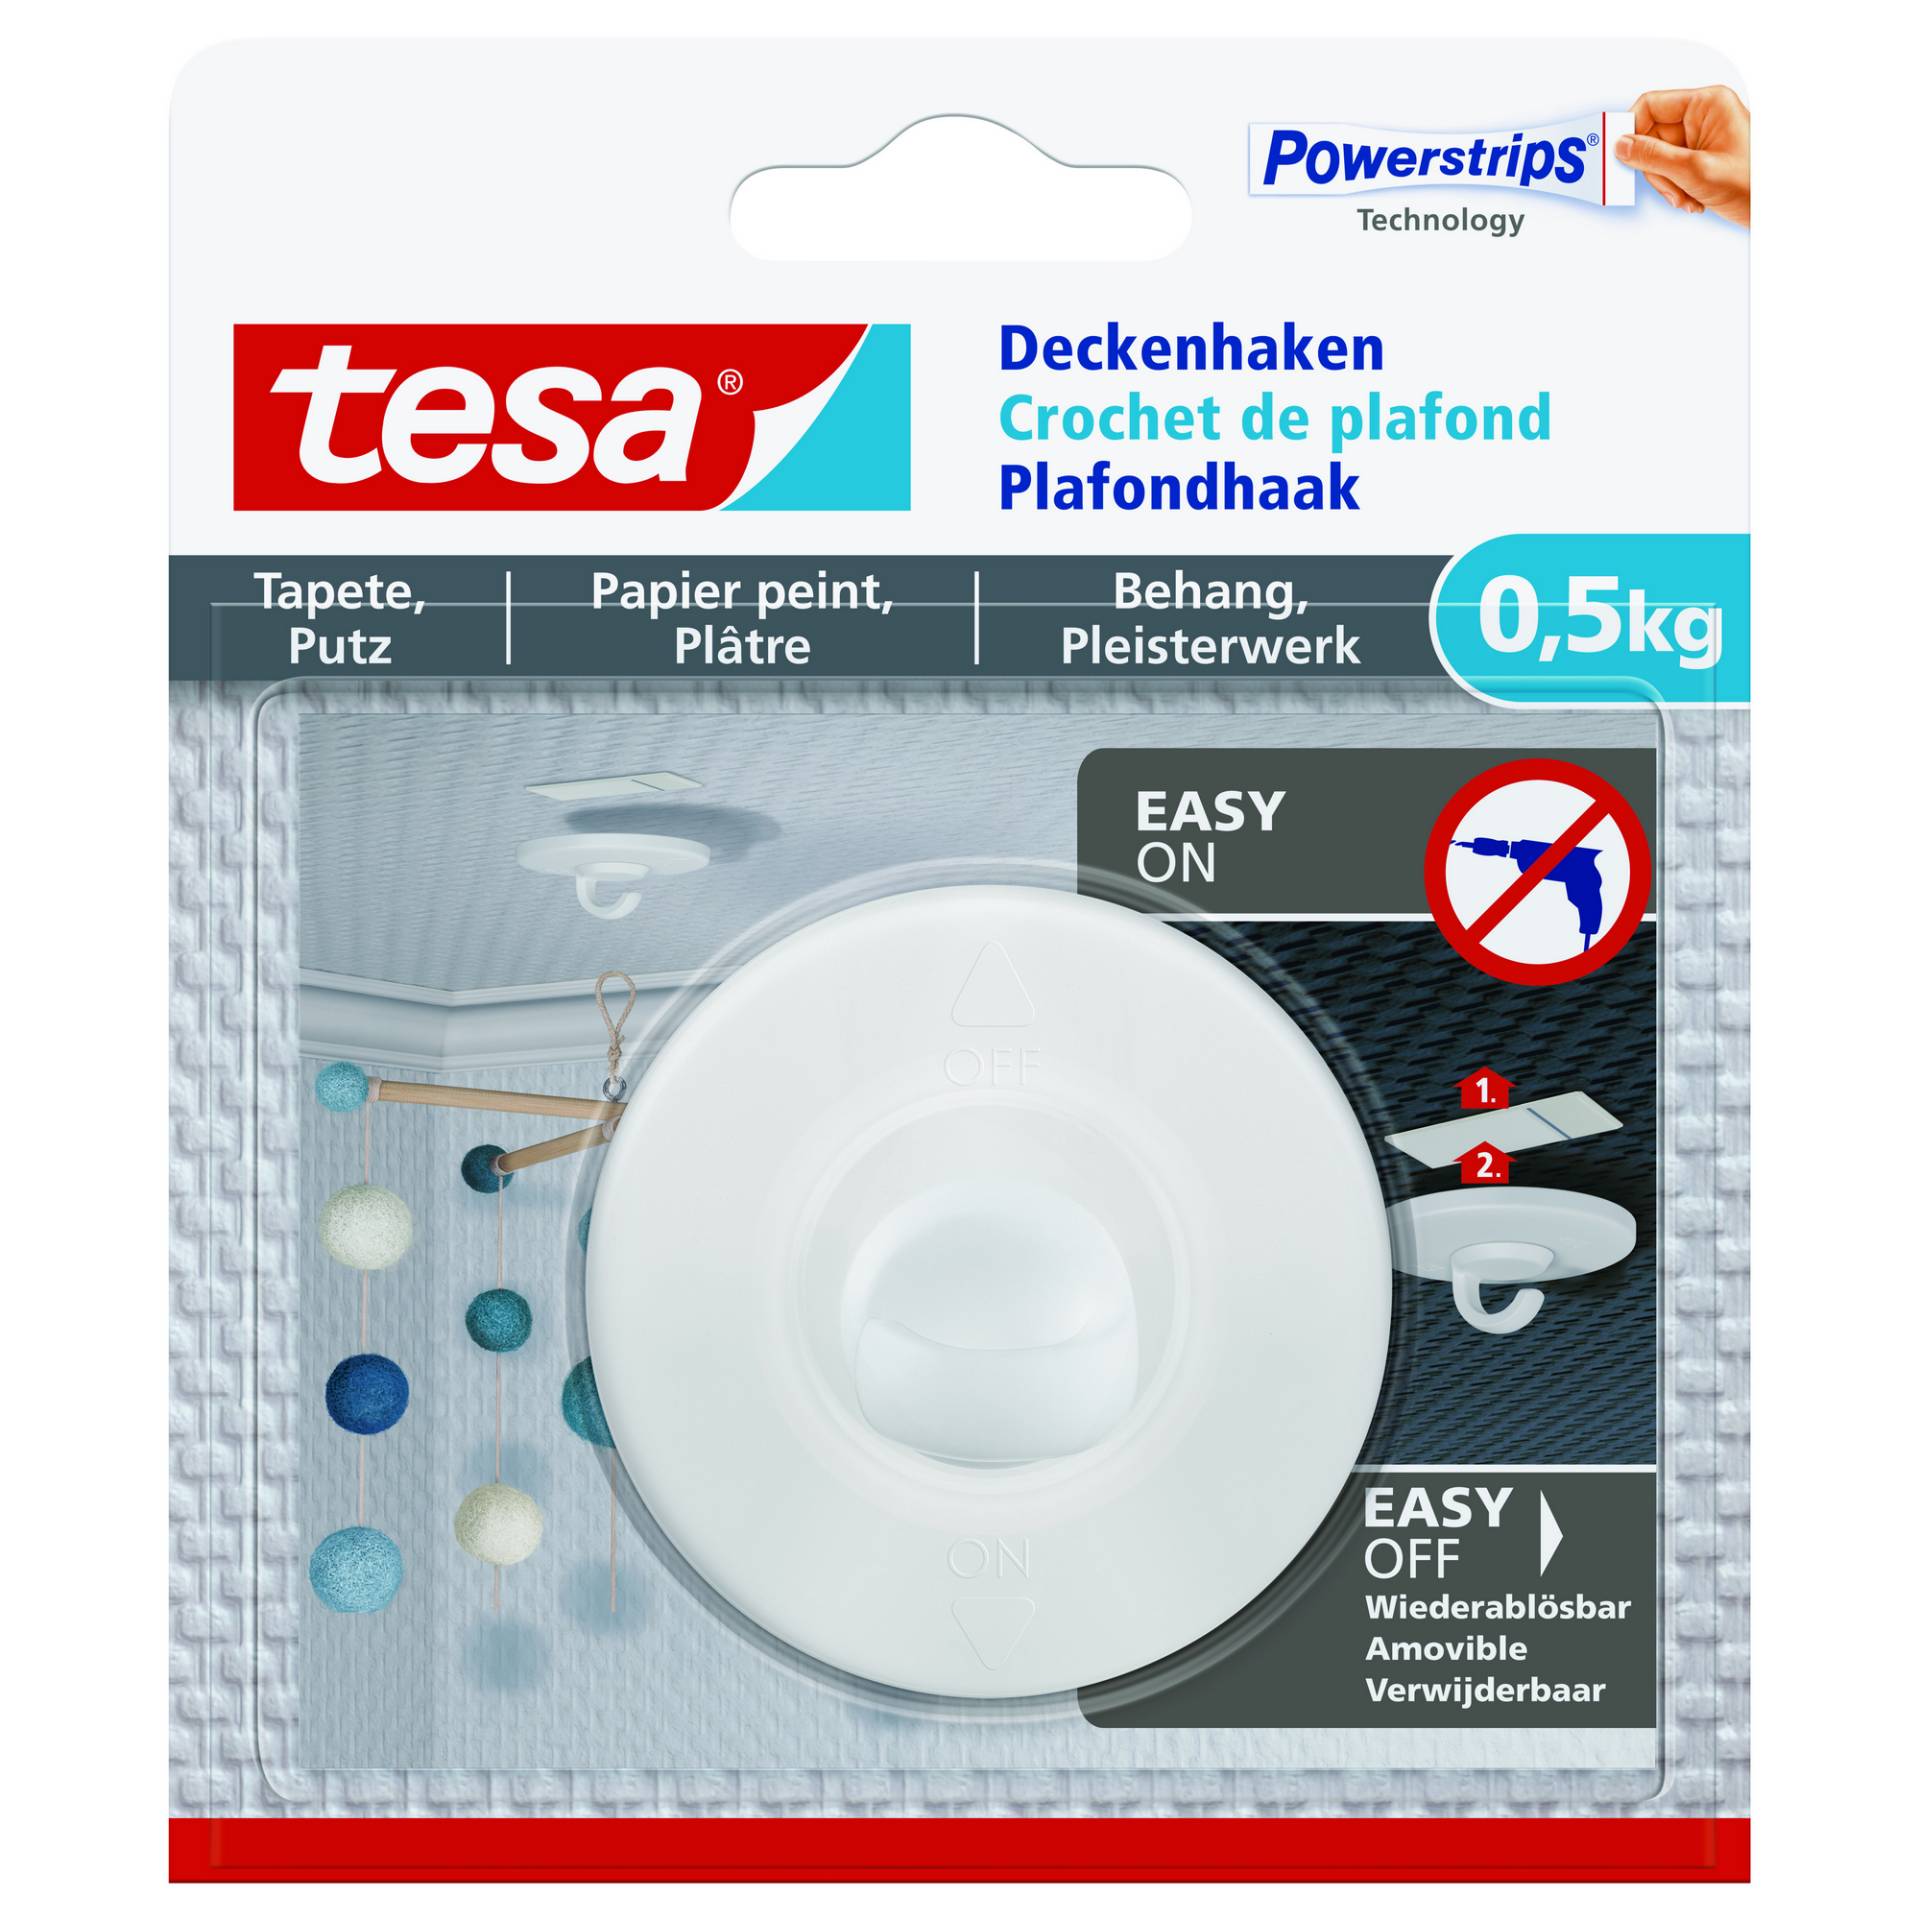 tesa Deckenhaken 'Powerstrips' weiß Tapete/Putz 0,5 kg von Tesa